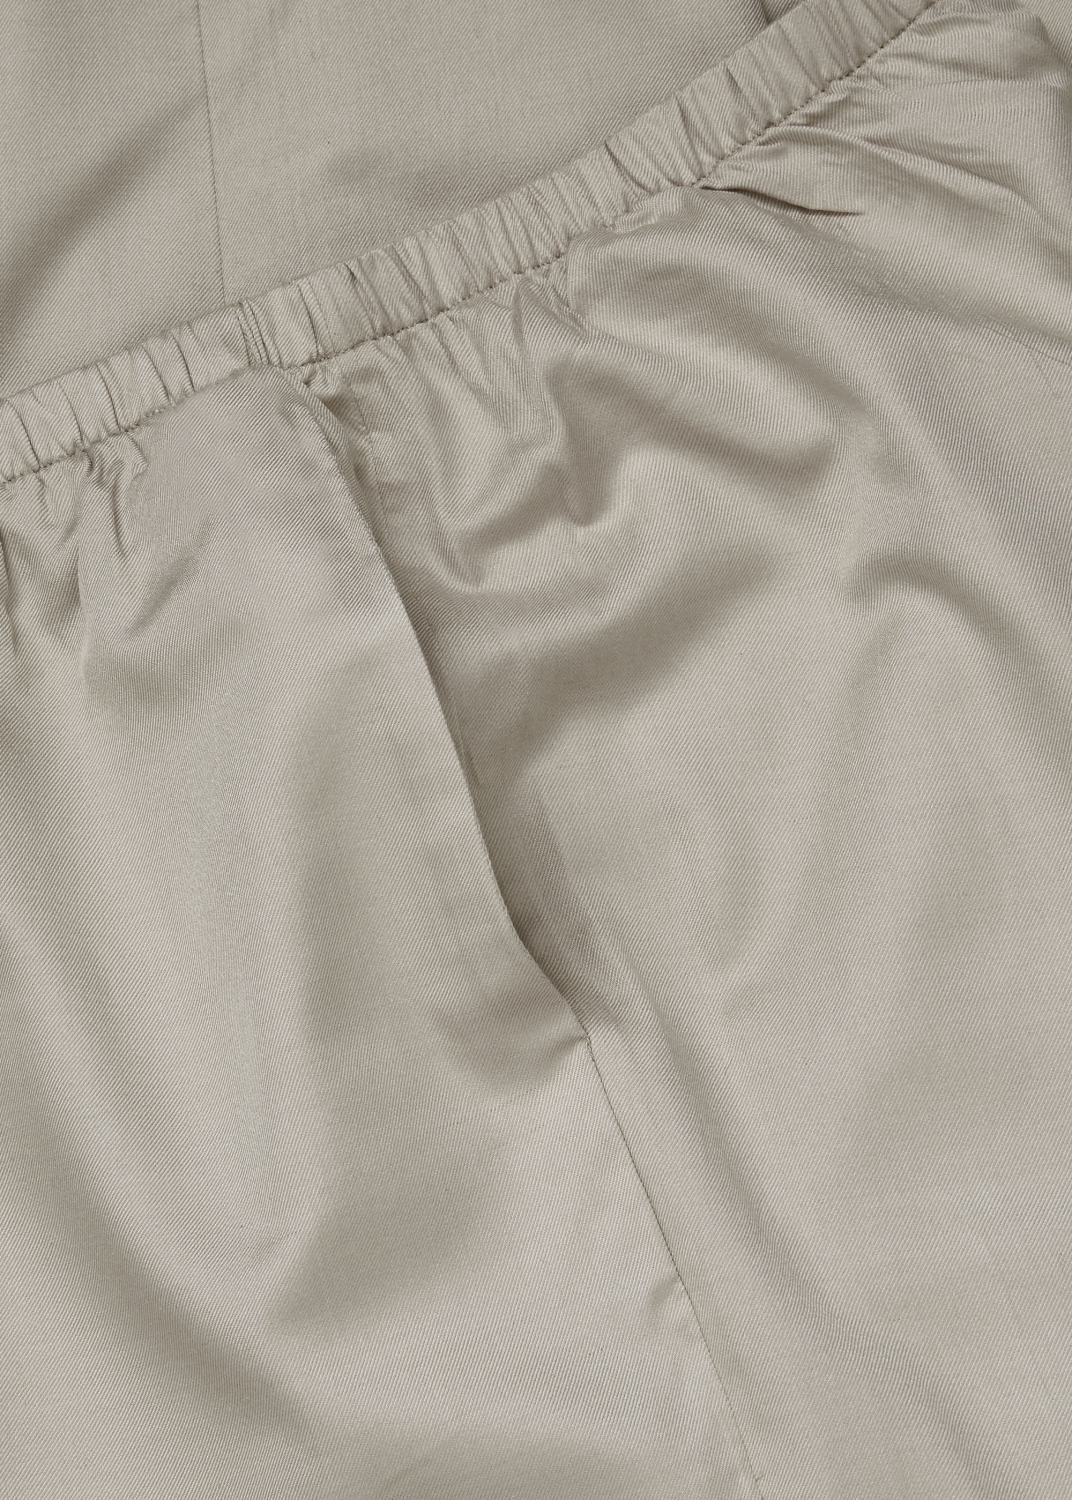 Bukser & shorts - Alba silkebukser